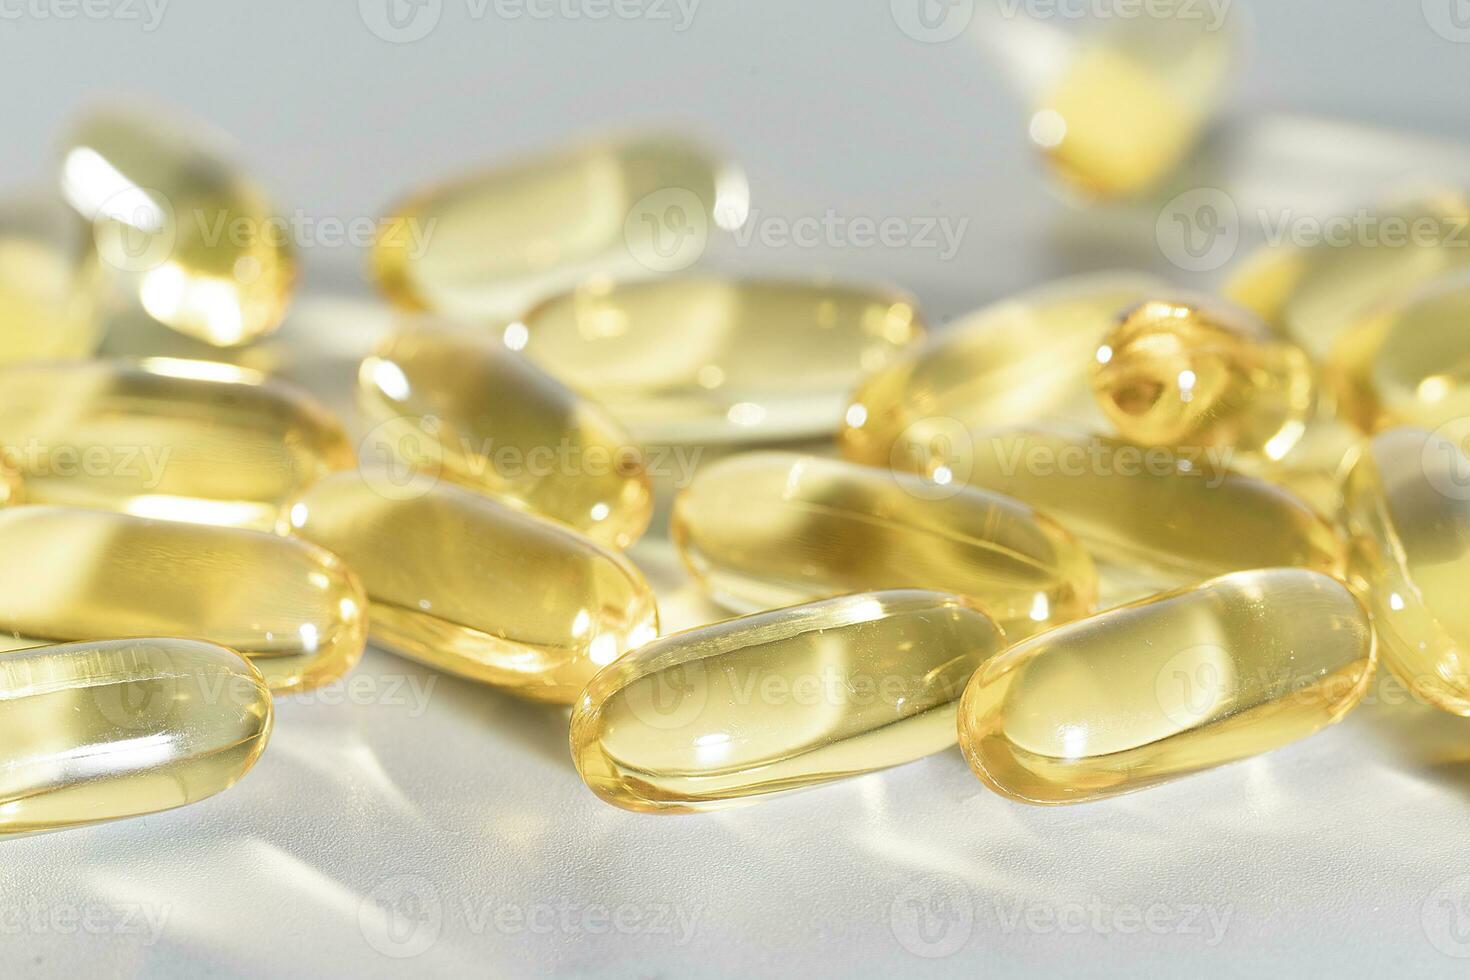 fisk olja omega 3 på vit bakgrund, vitamin d gul tillägg gel kapslar, makro skott foto